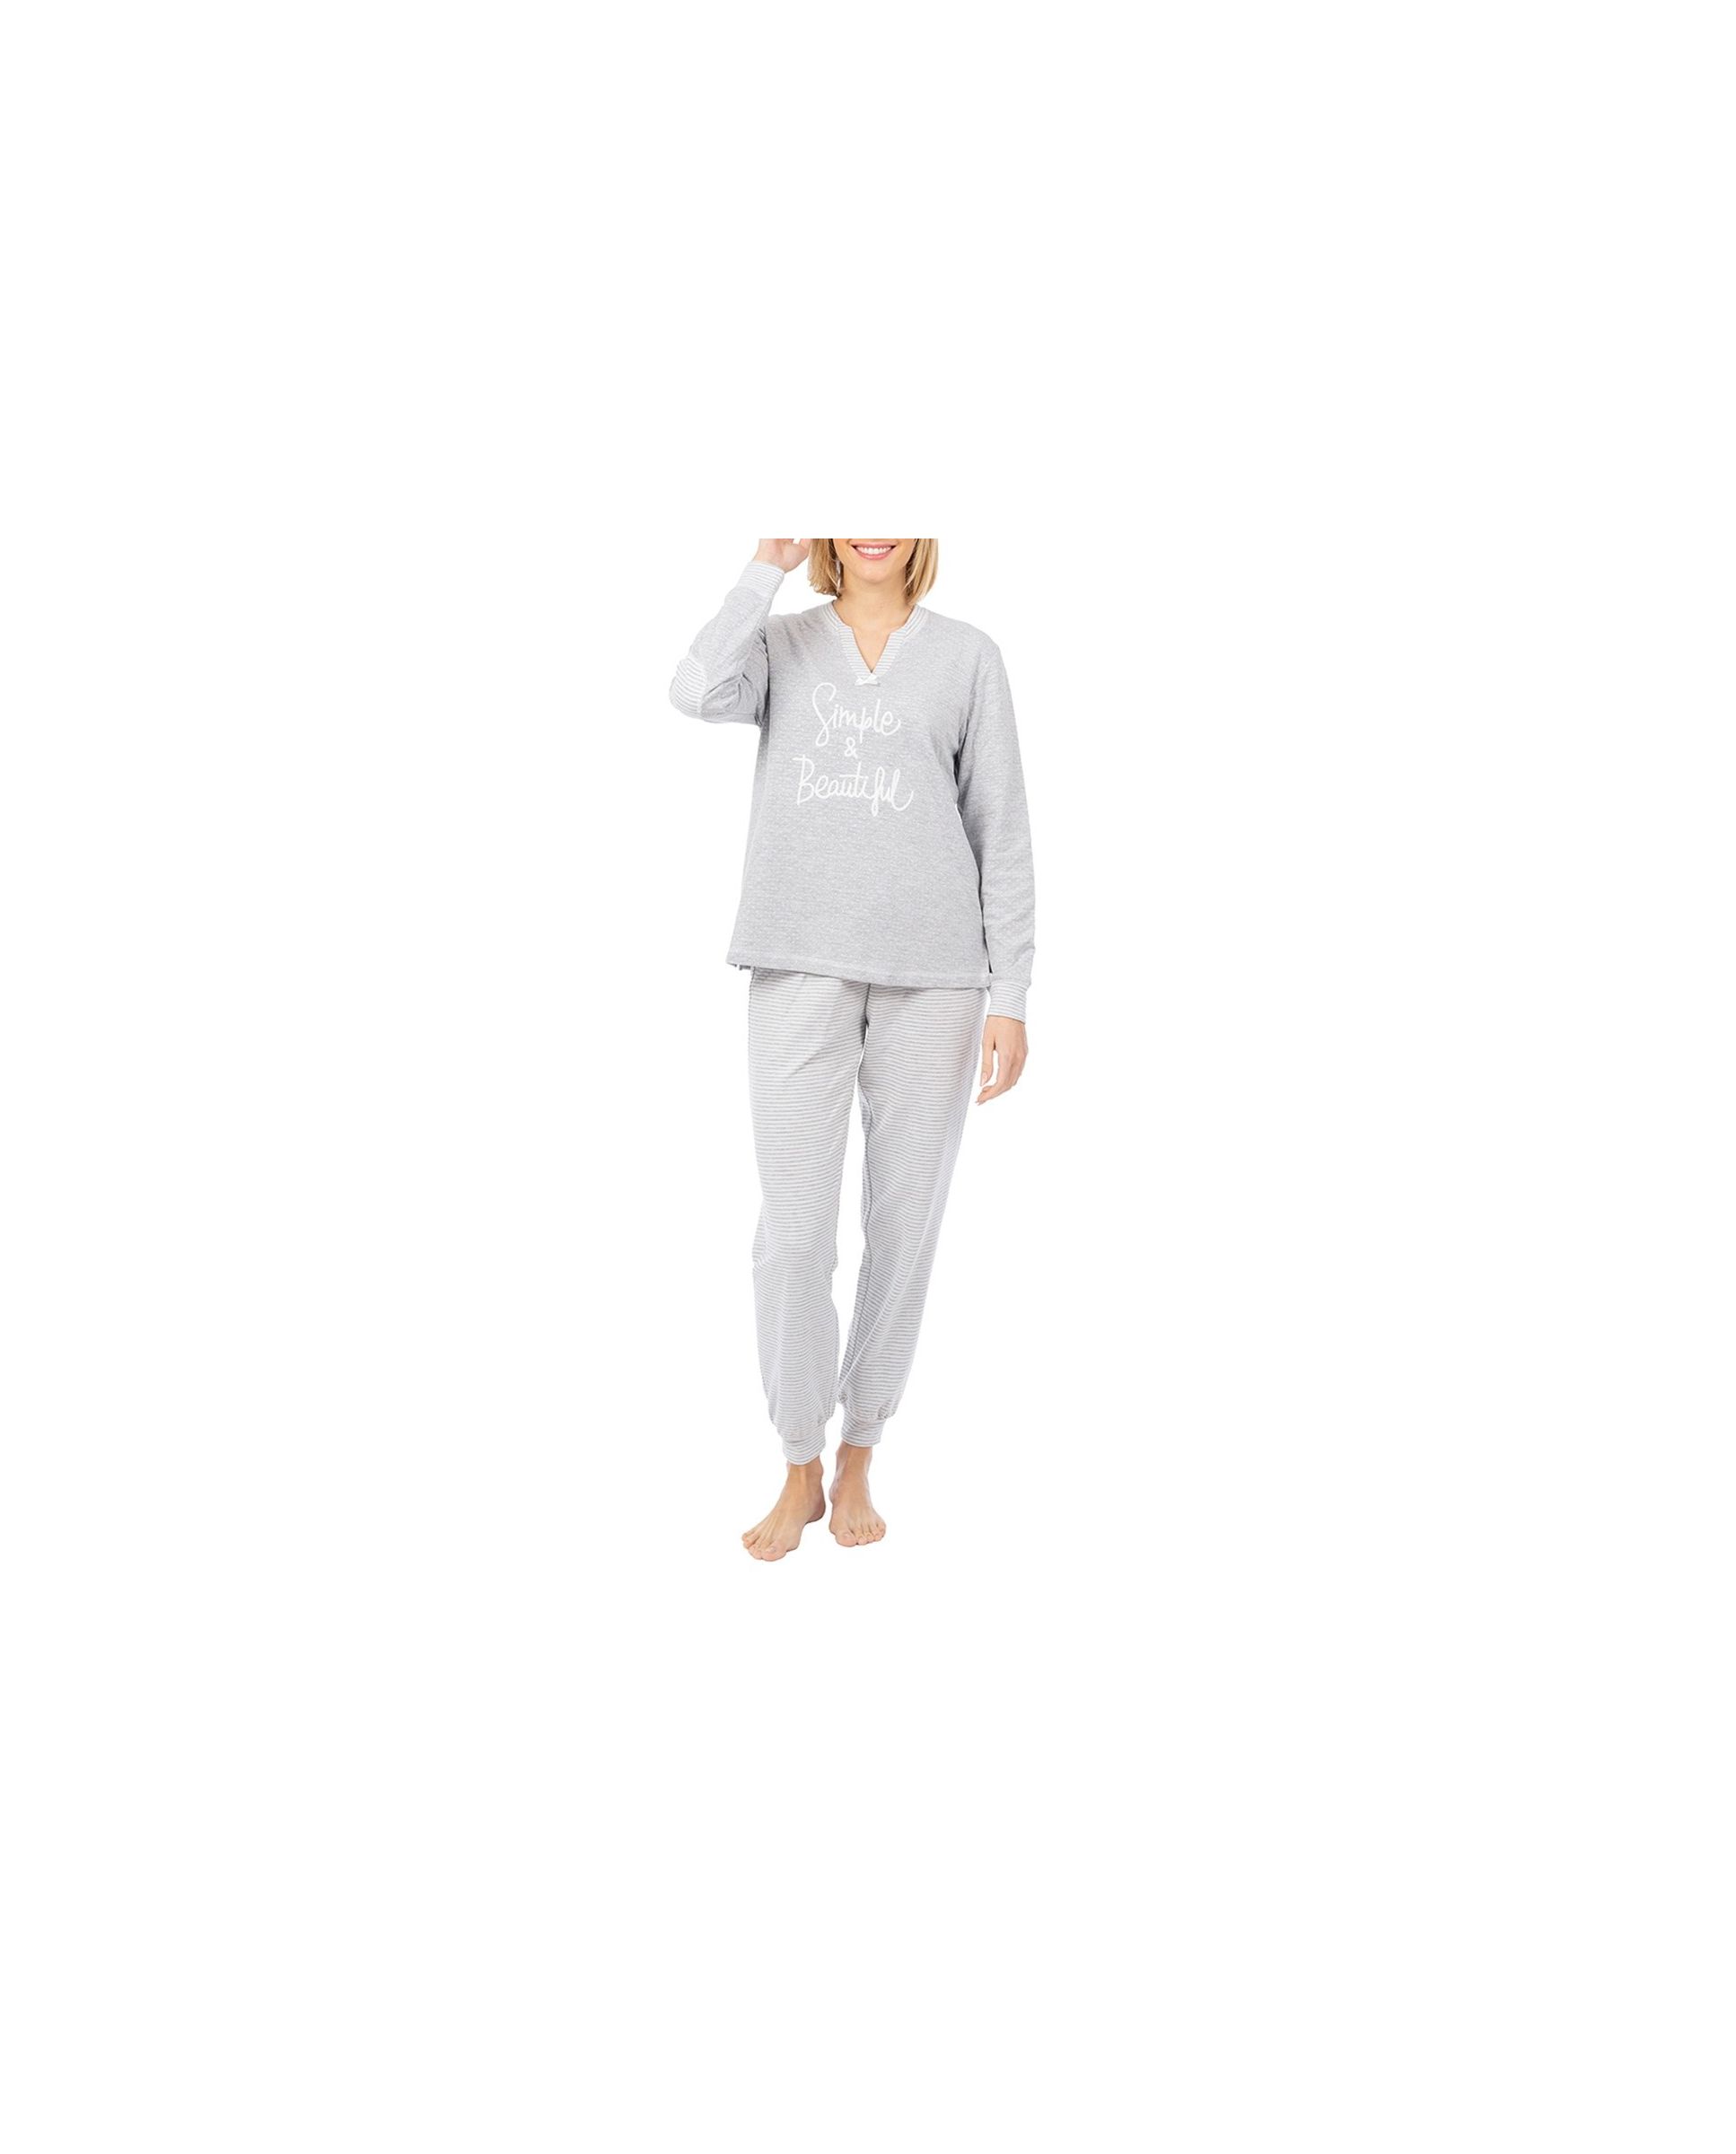 Pijama de invierno de manga larga gris a rayas para mujer